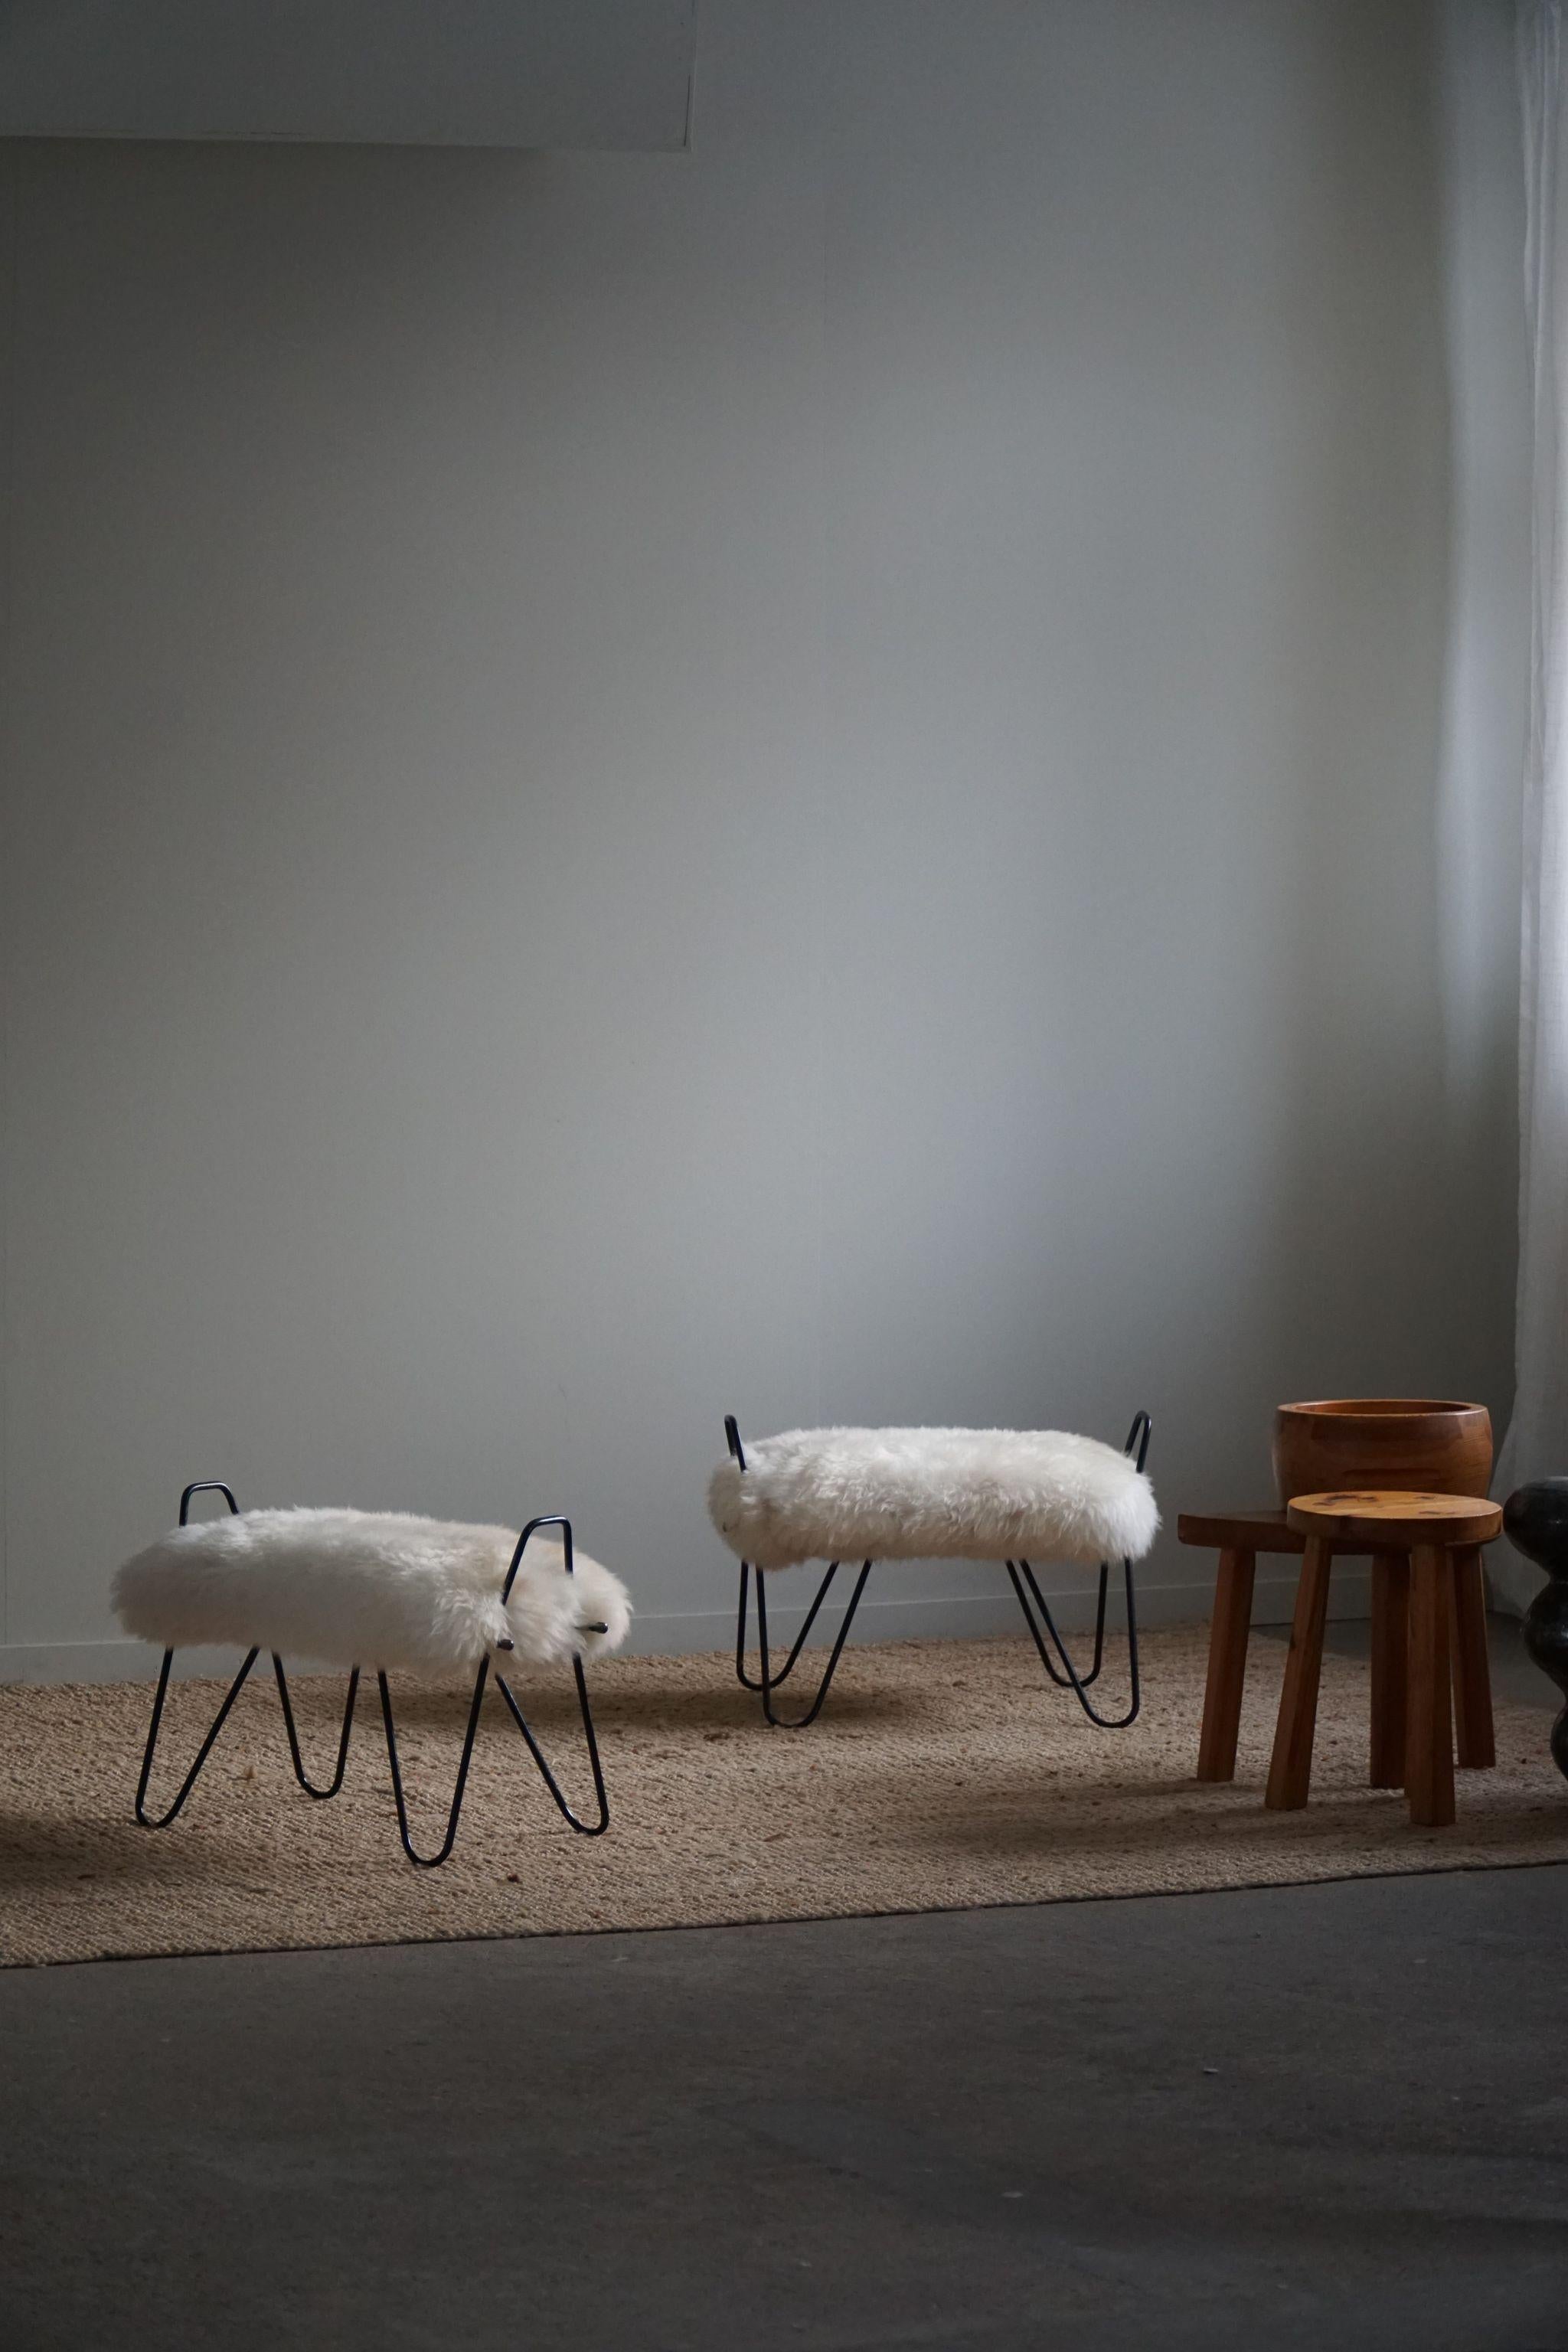 Ein exquisites und seltenes Paar Hocker, hergestellt in Dänemark in den 1960er Jahren. Die Hocker wurden mit einem luxuriösen isländischen Schafsfell neu gepolstert, das der Gesamtästhetik eine weiche und fühlbare Textur verleiht. Die Wolle ist warm